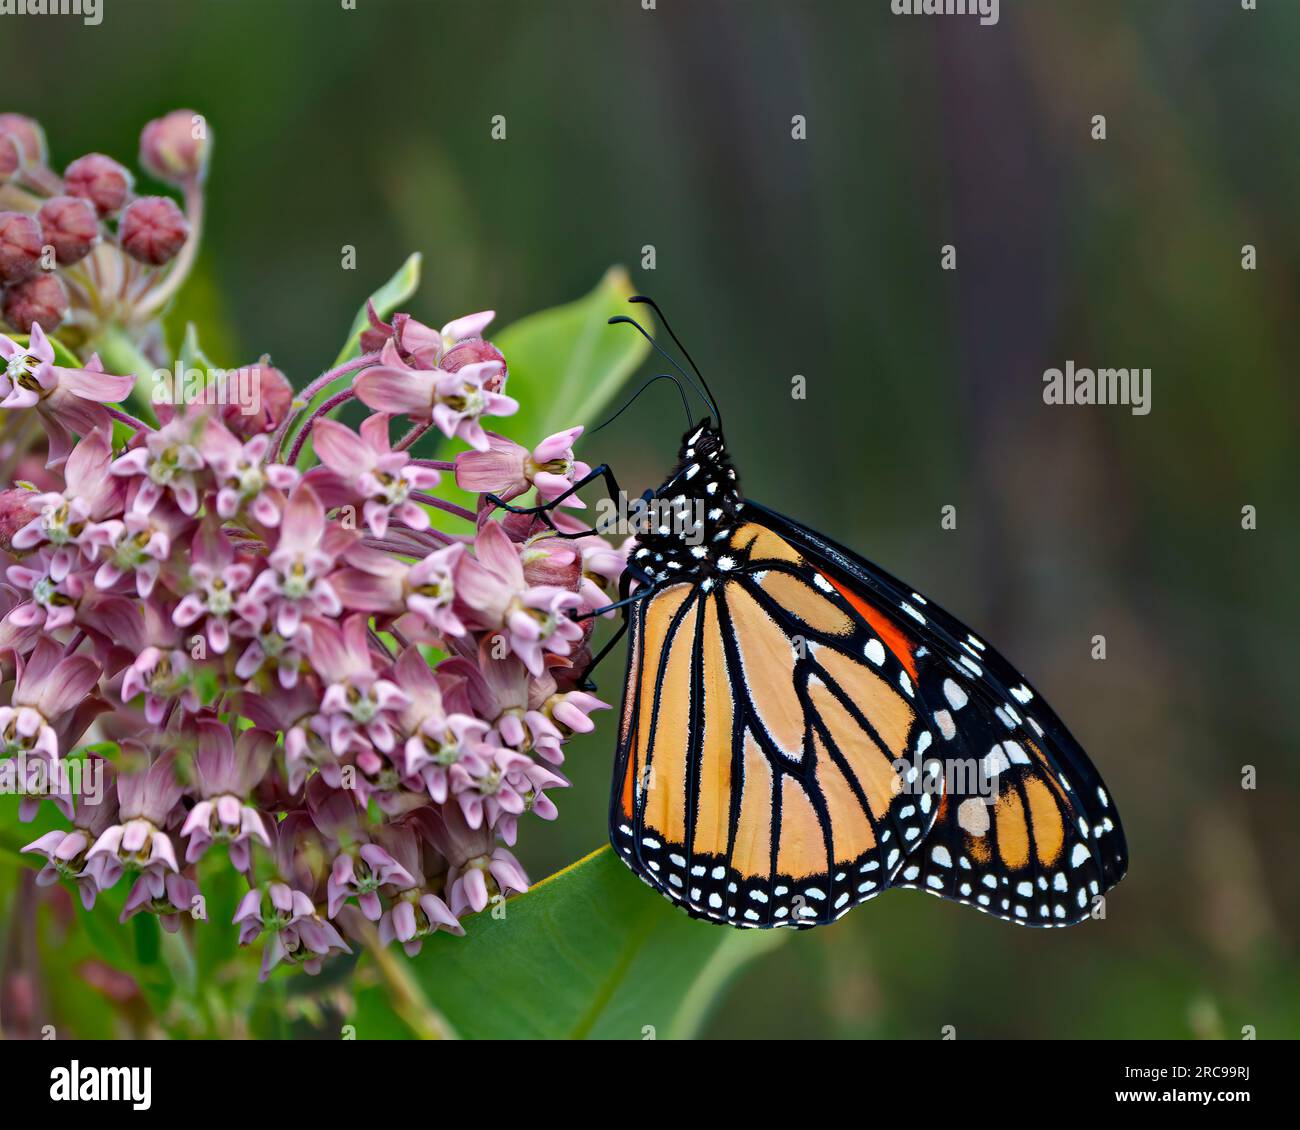 Vista lateral de la mariposa monarca bebiendo o bebiendo néctar de una planta de algodoncillo con un fondo colorido en su entorno y hábitat. Foto de stock